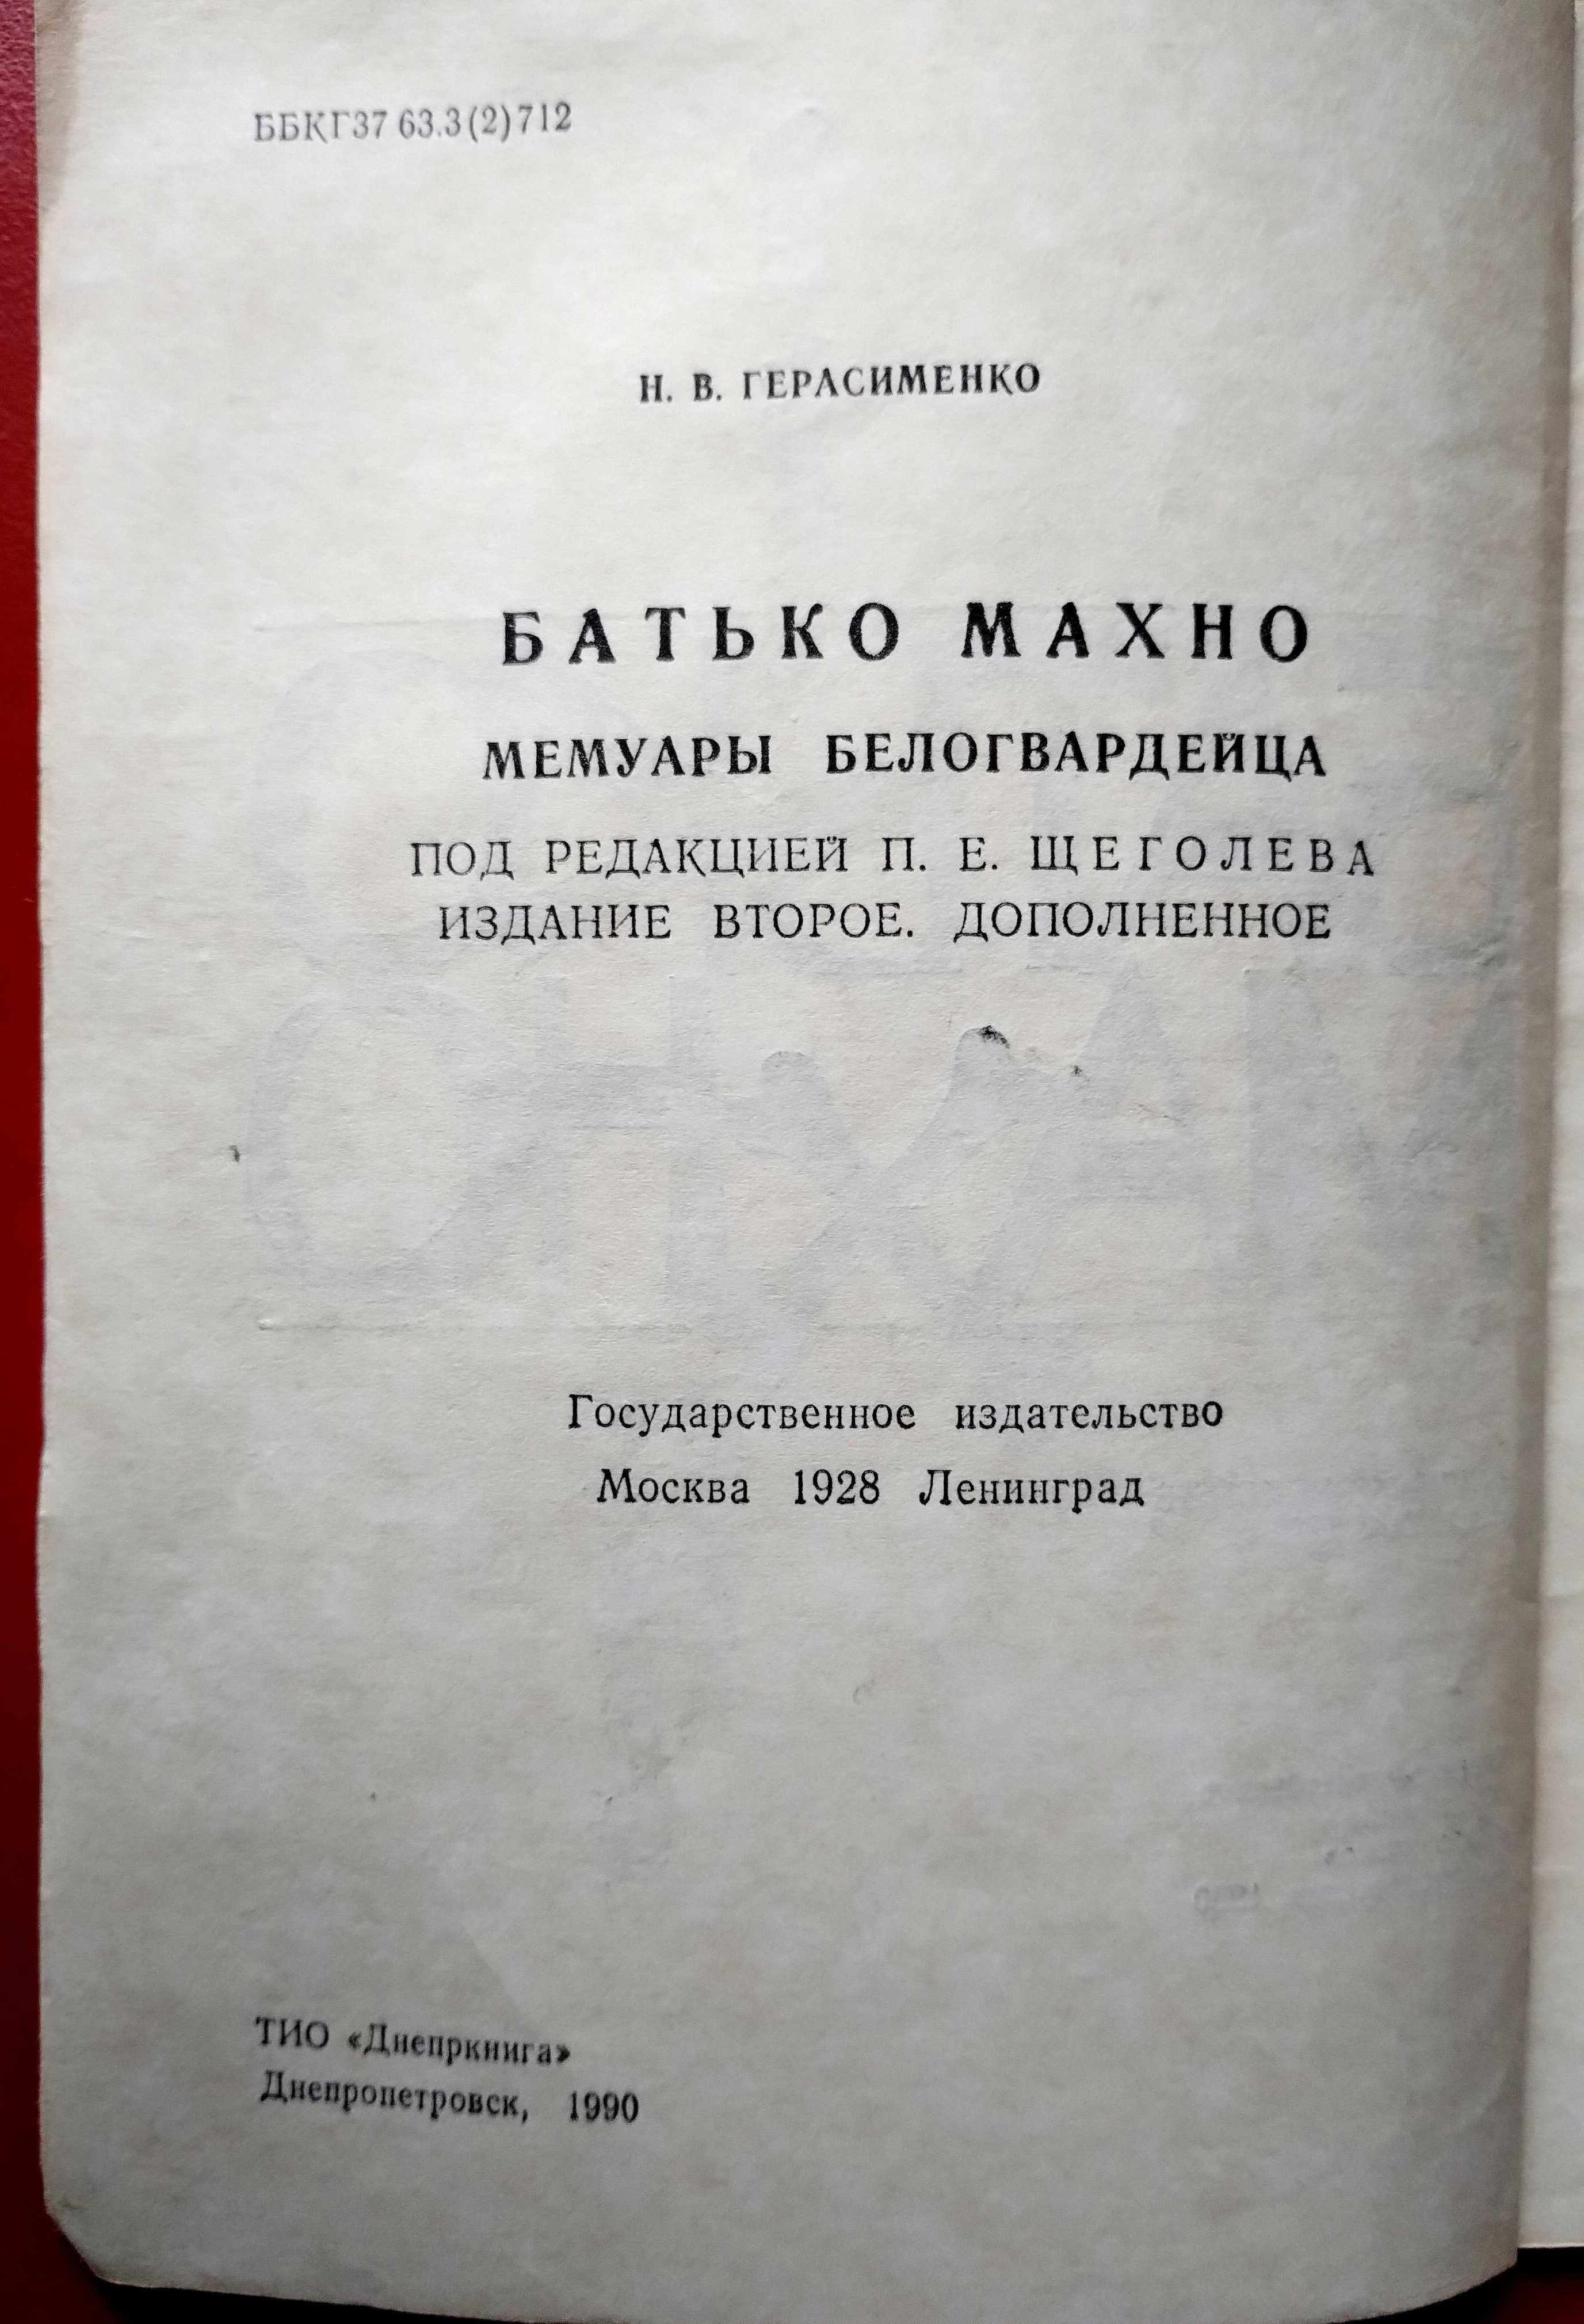 Батько Махно Герасименко Воспроизведение издания 1928 г.